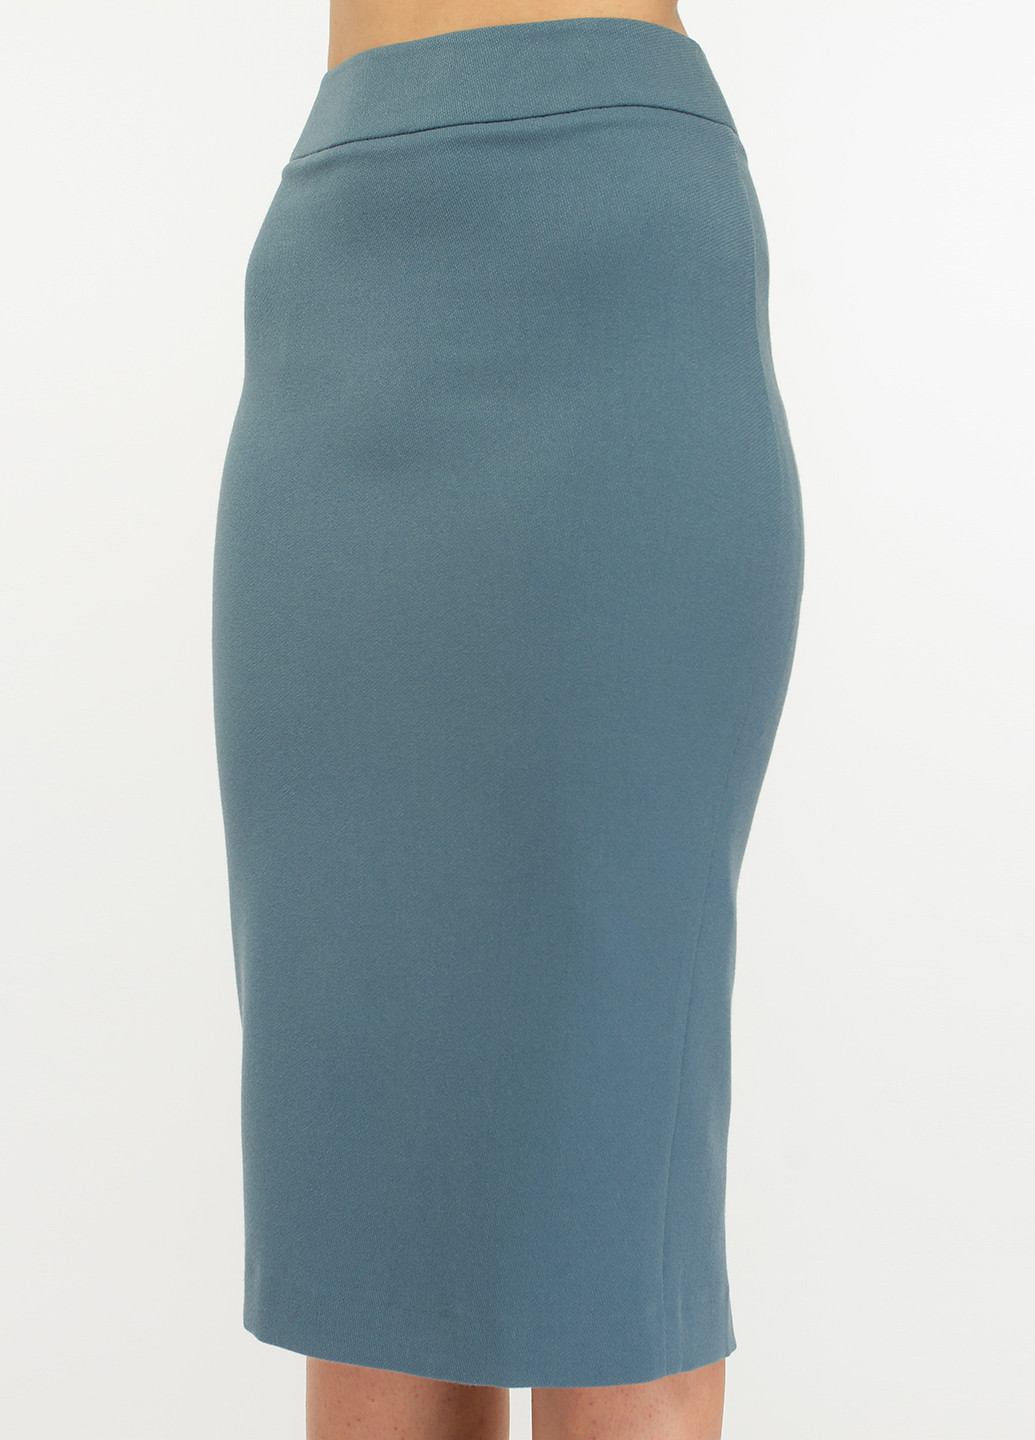 Костюм (жакет, юбка) BGL Комплект (жакет и юбка) юбочный однотонный голубой деловой вискоза